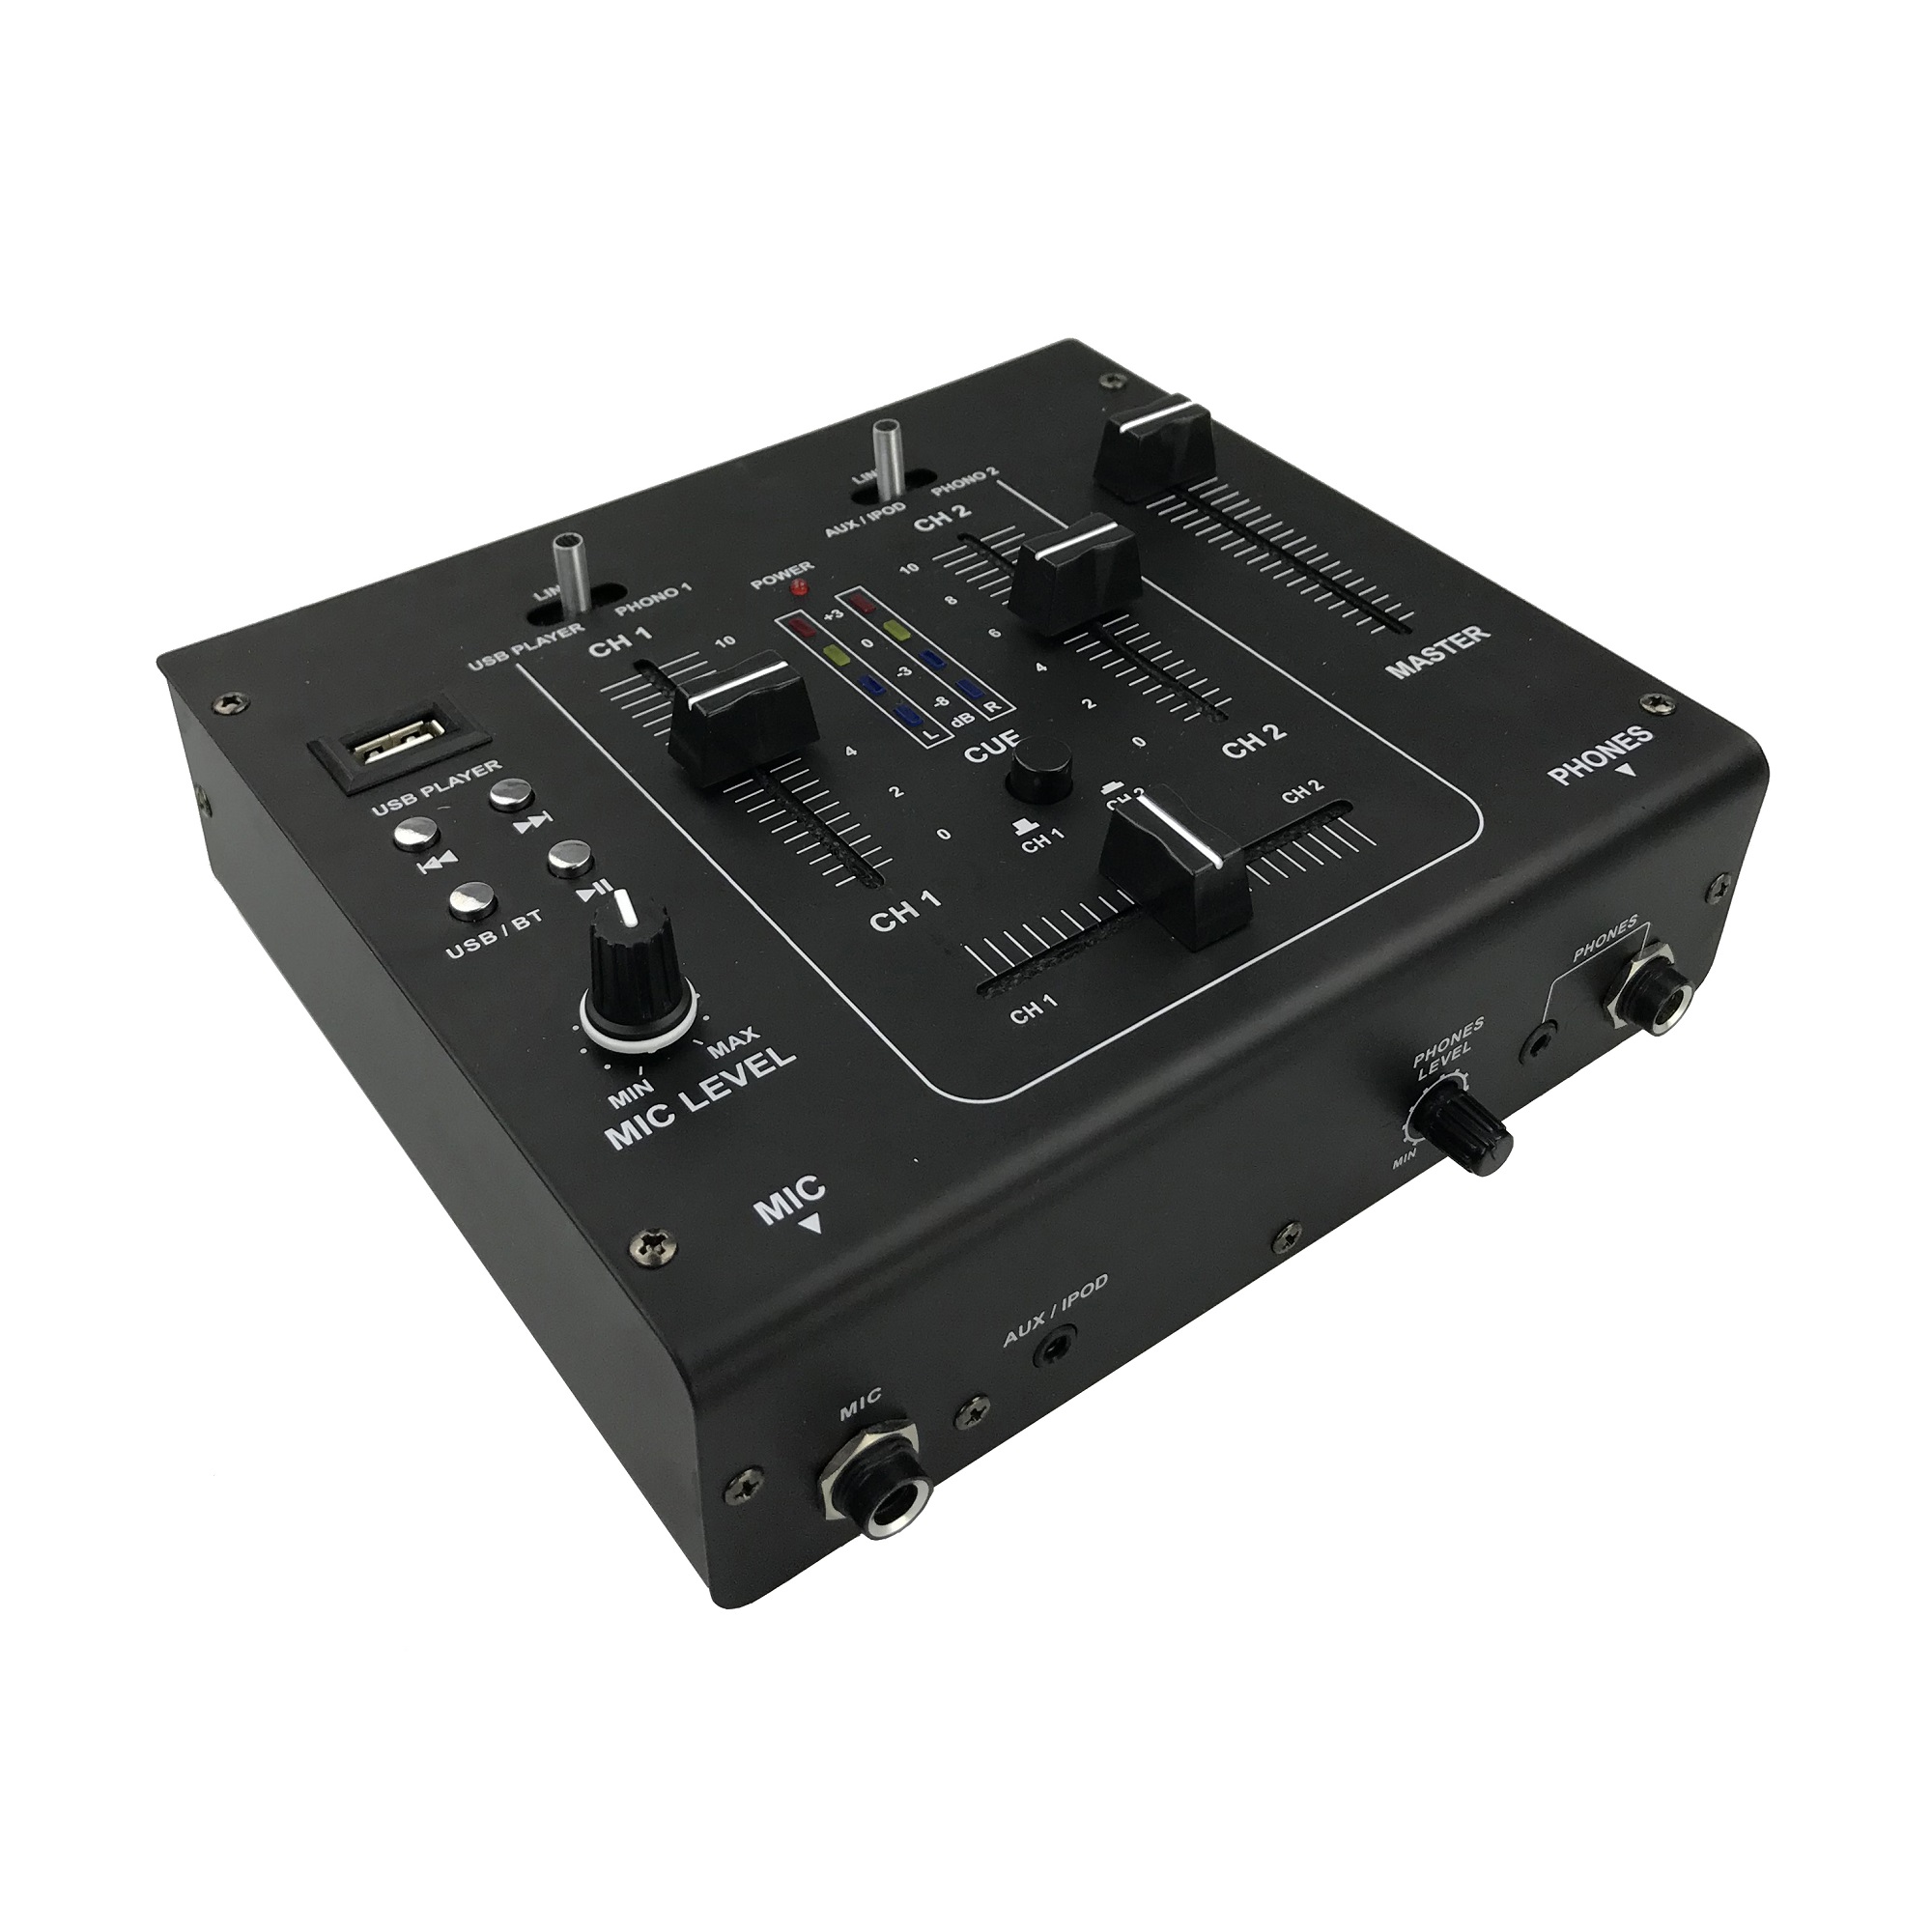 DJM62-BT Mezclador DJ de 2canales y6 entradascon 1 reproductor USB